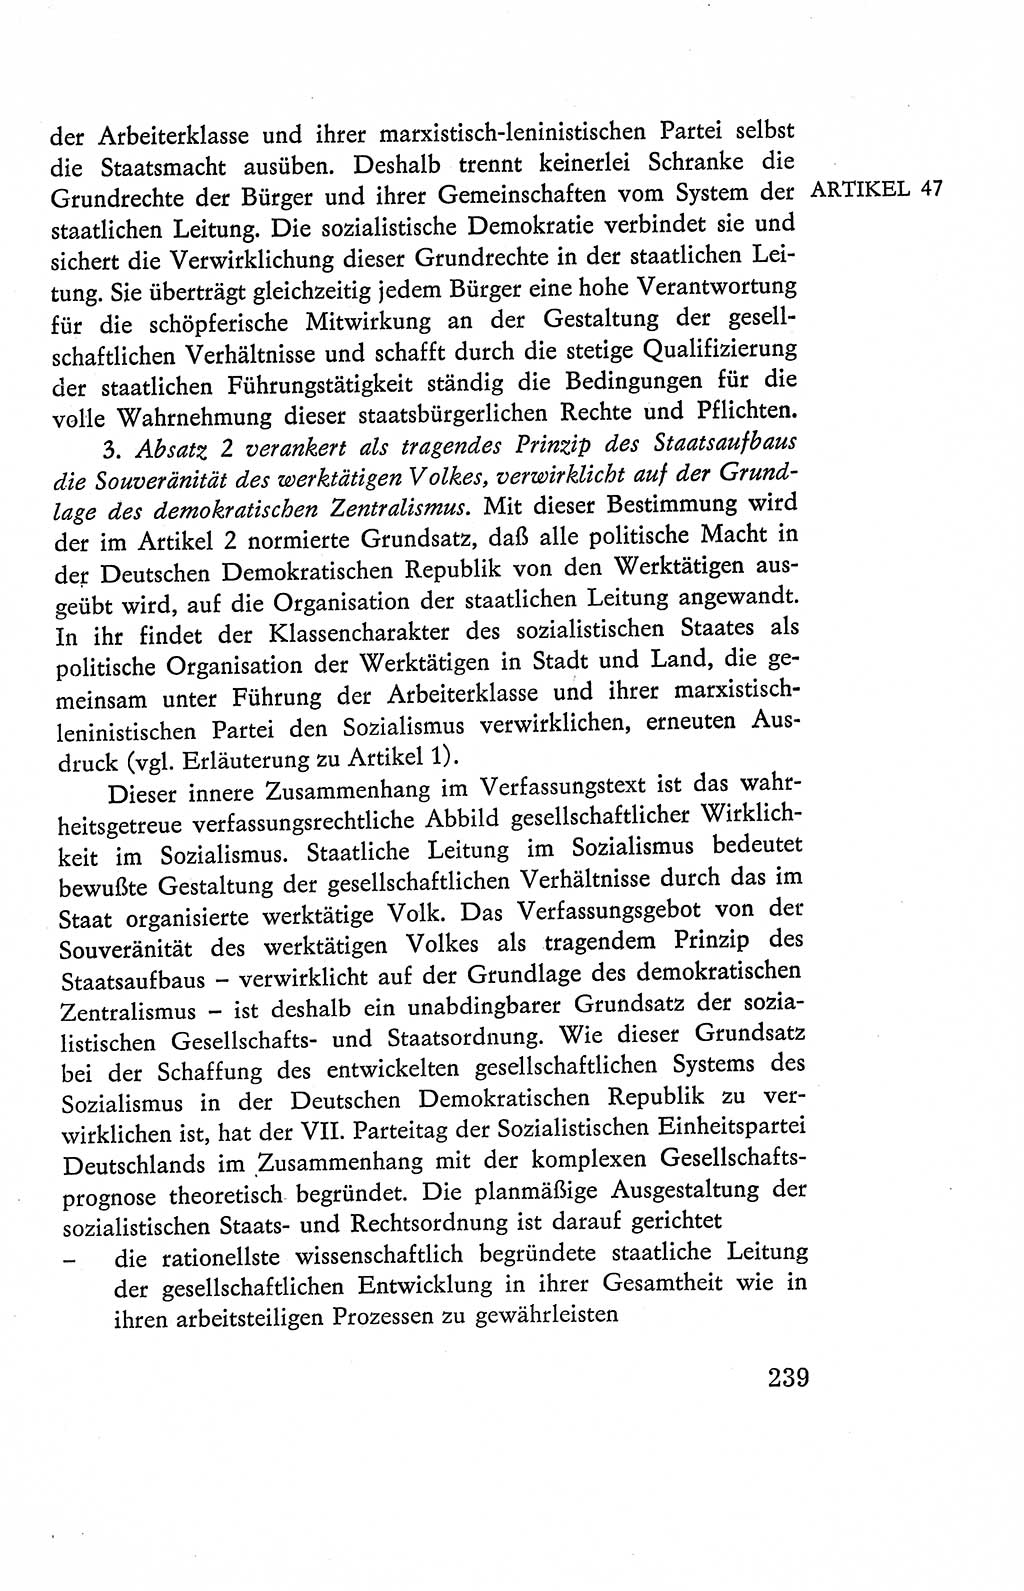 Verfassung der Deutschen Demokratischen Republik (DDR), Dokumente, Kommentar 1969, Band 2, Seite 239 (Verf. DDR Dok. Komm. 1969, Bd. 2, S. 239)